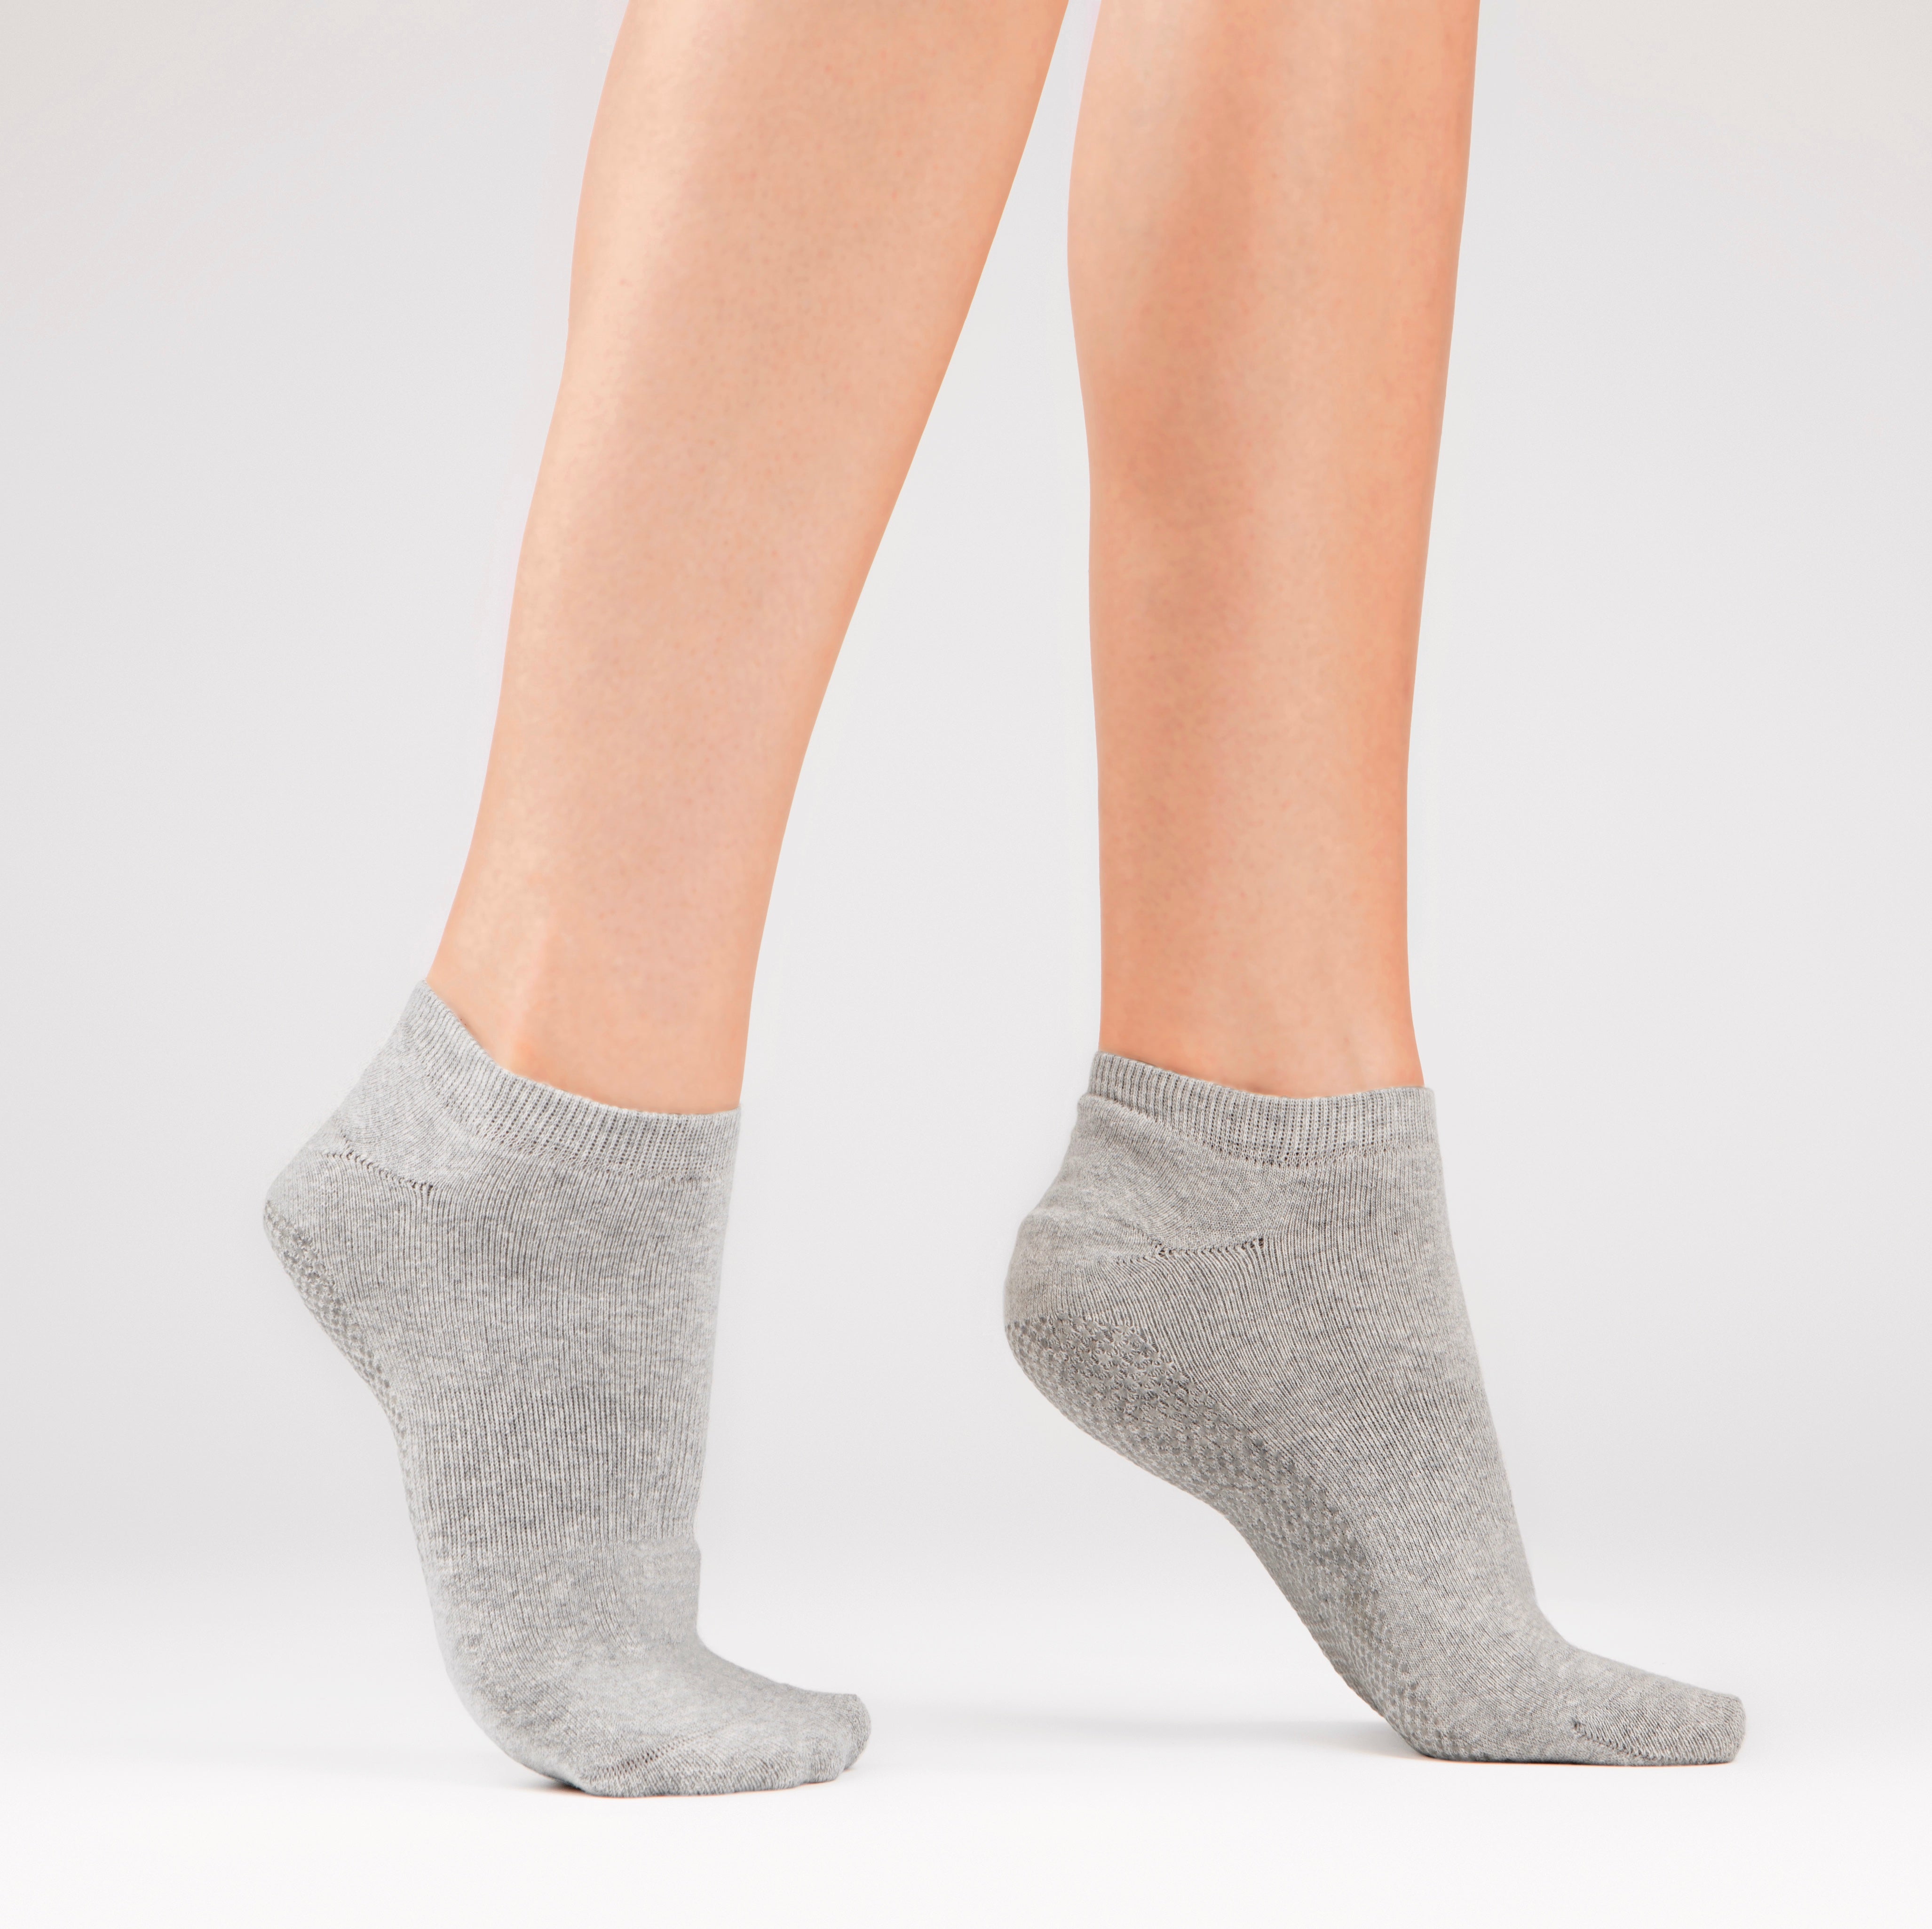 Elizabeth Reid Women's Grippy Sock